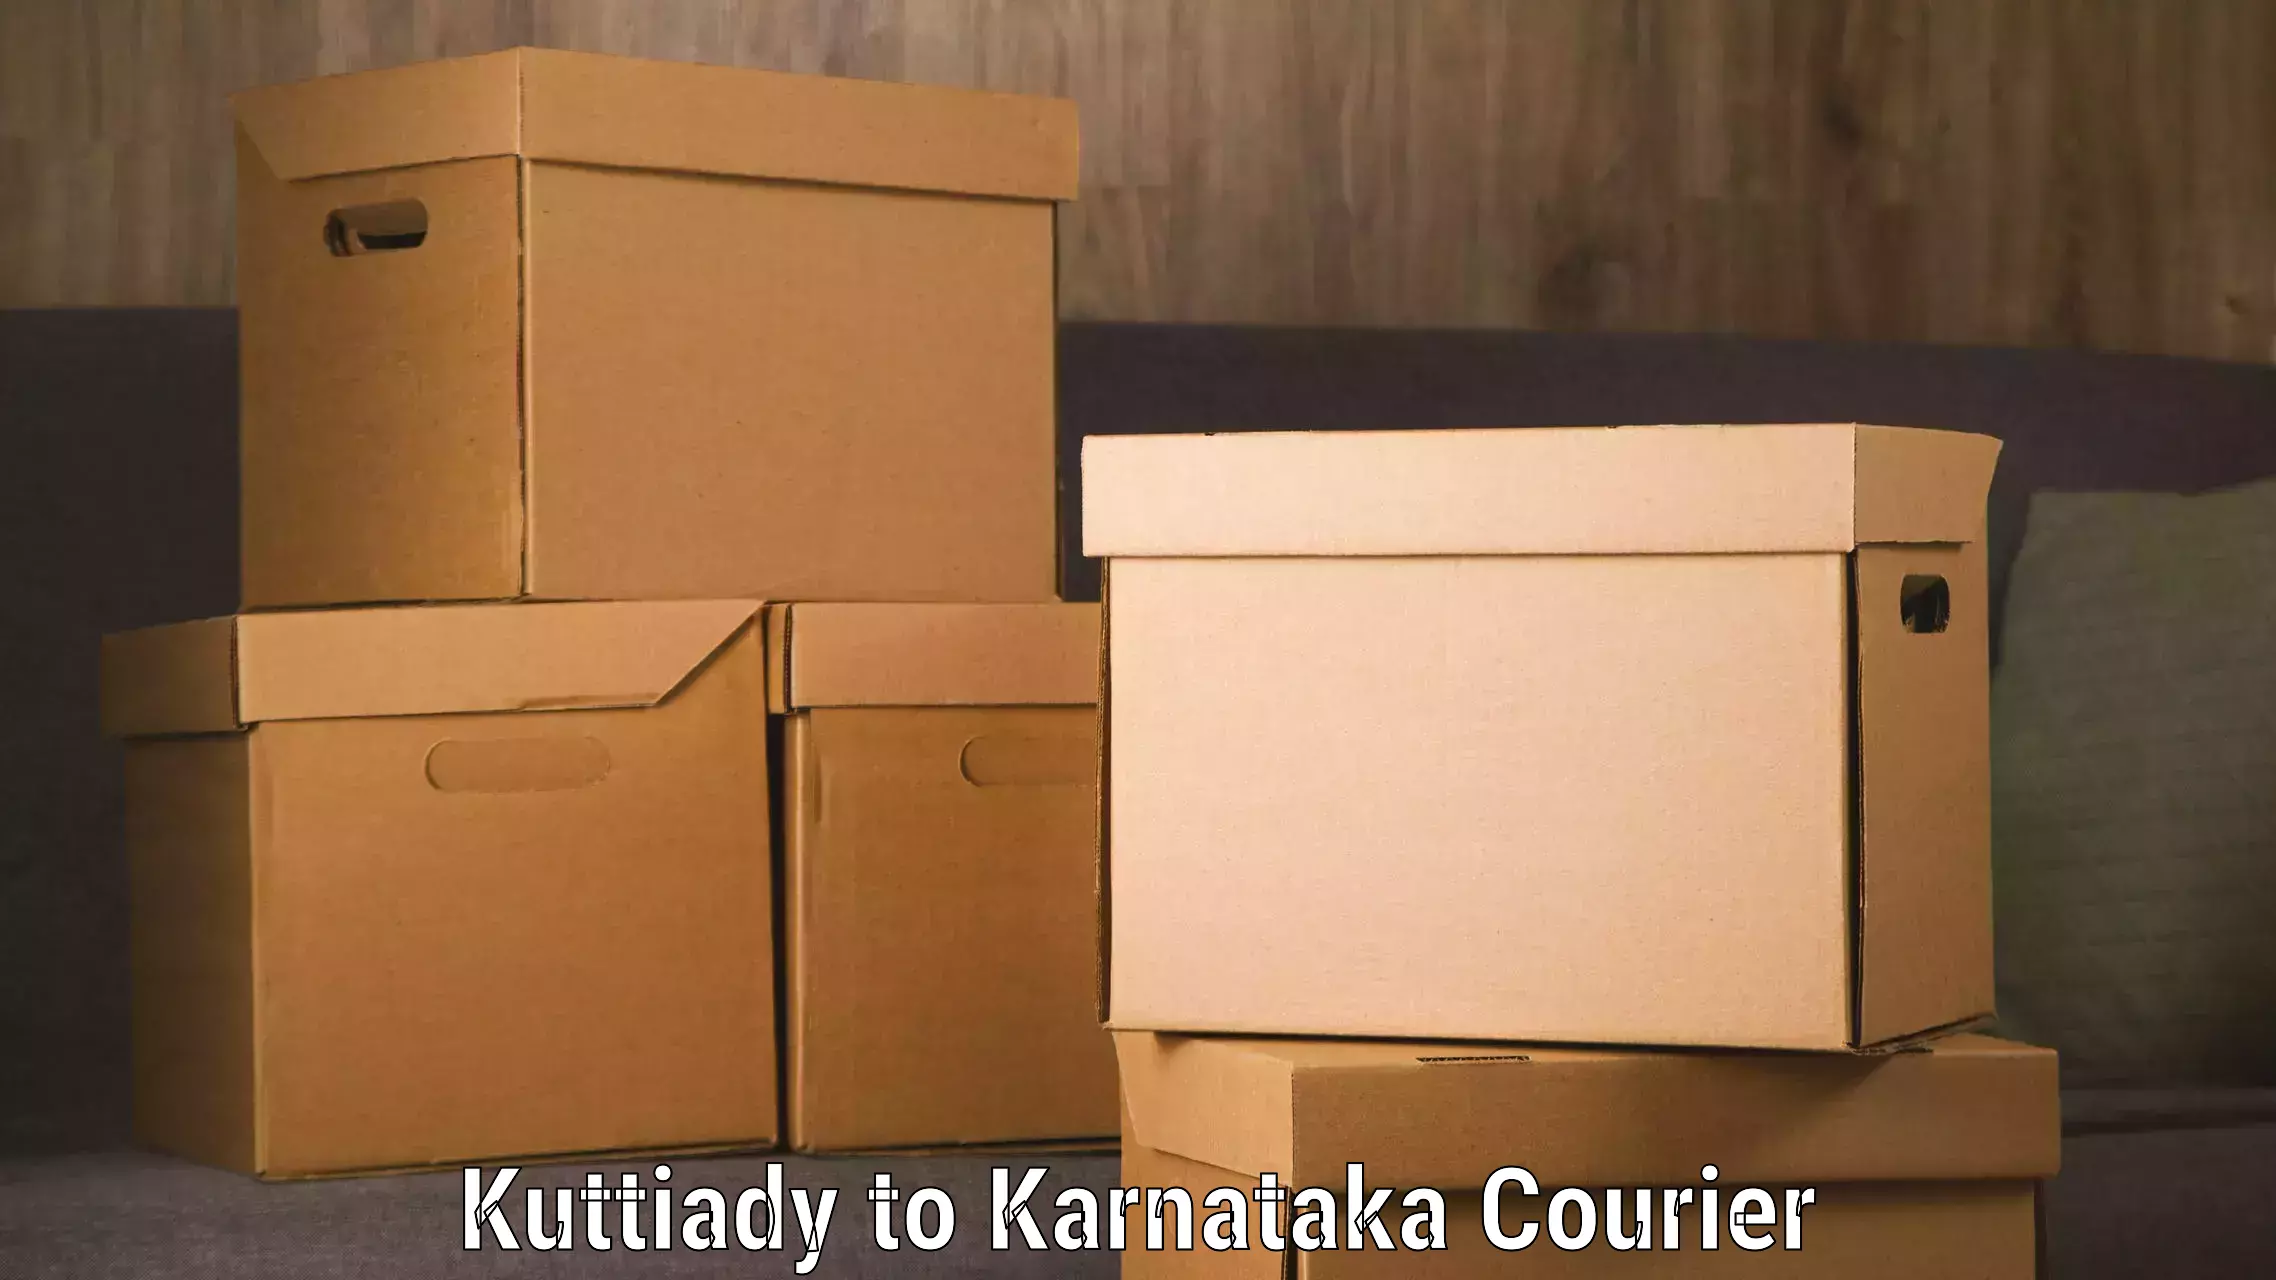 Advanced shipping technology Kuttiady to Eedu